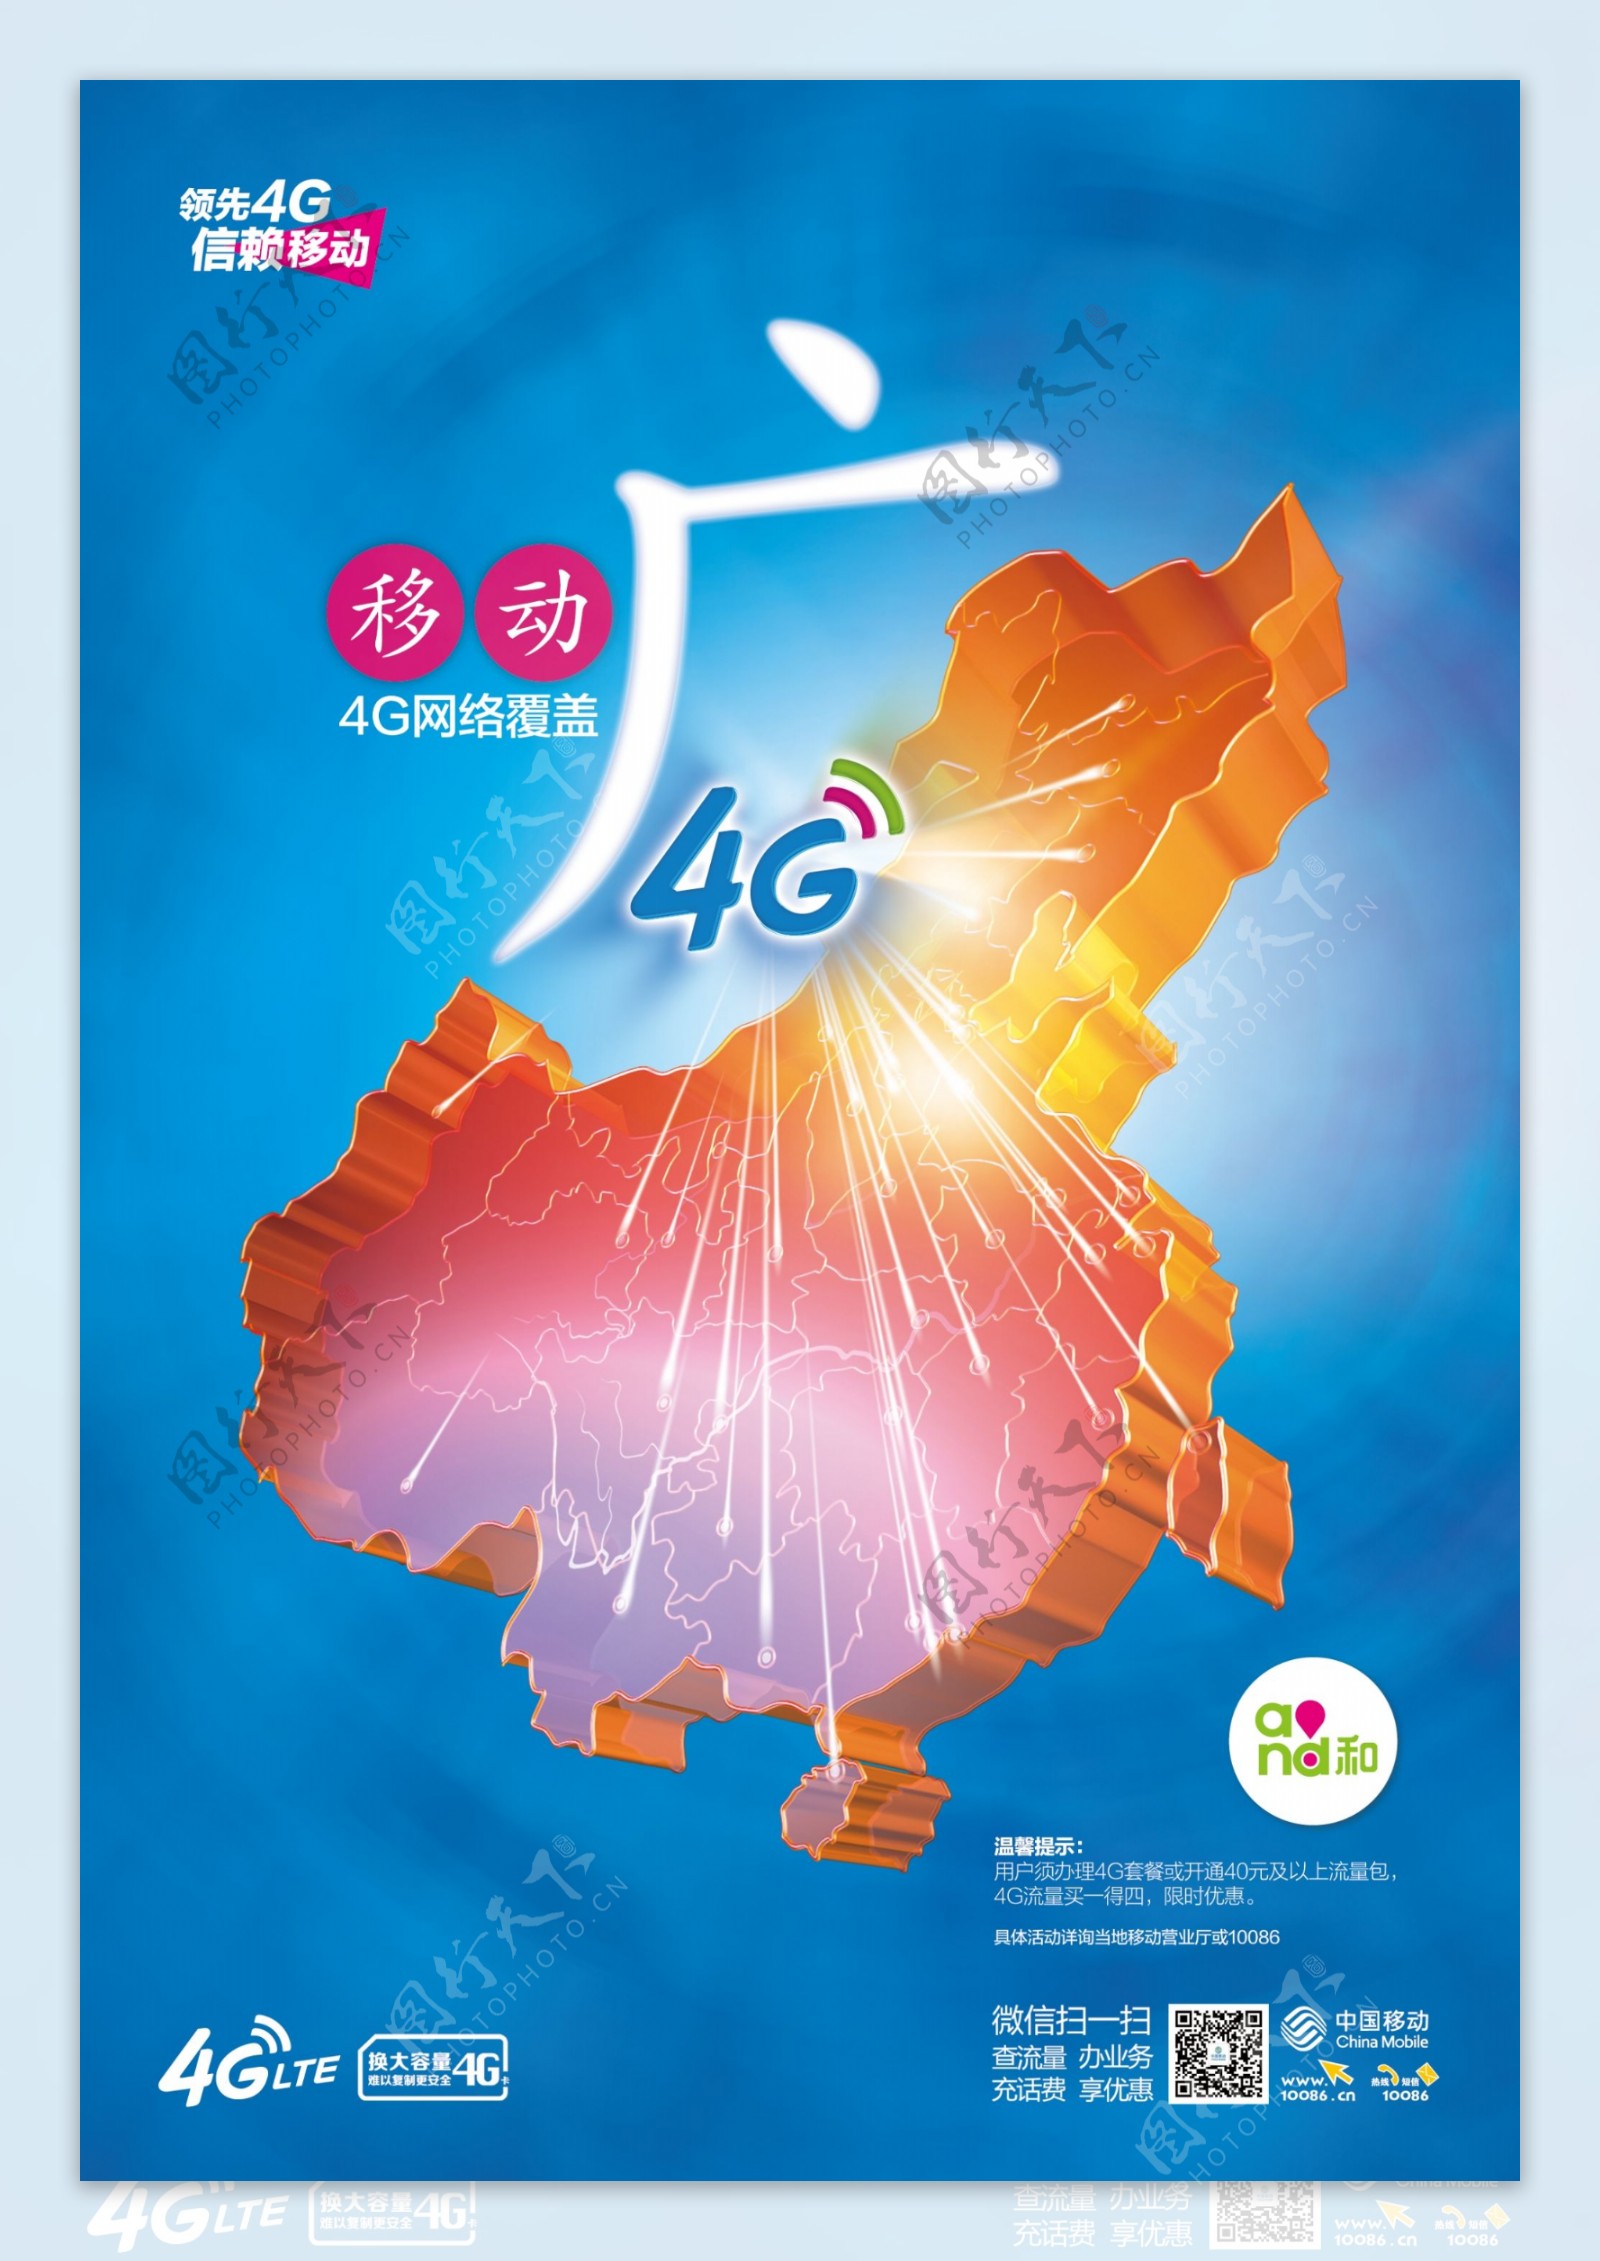 中国移动4G广告广字篇